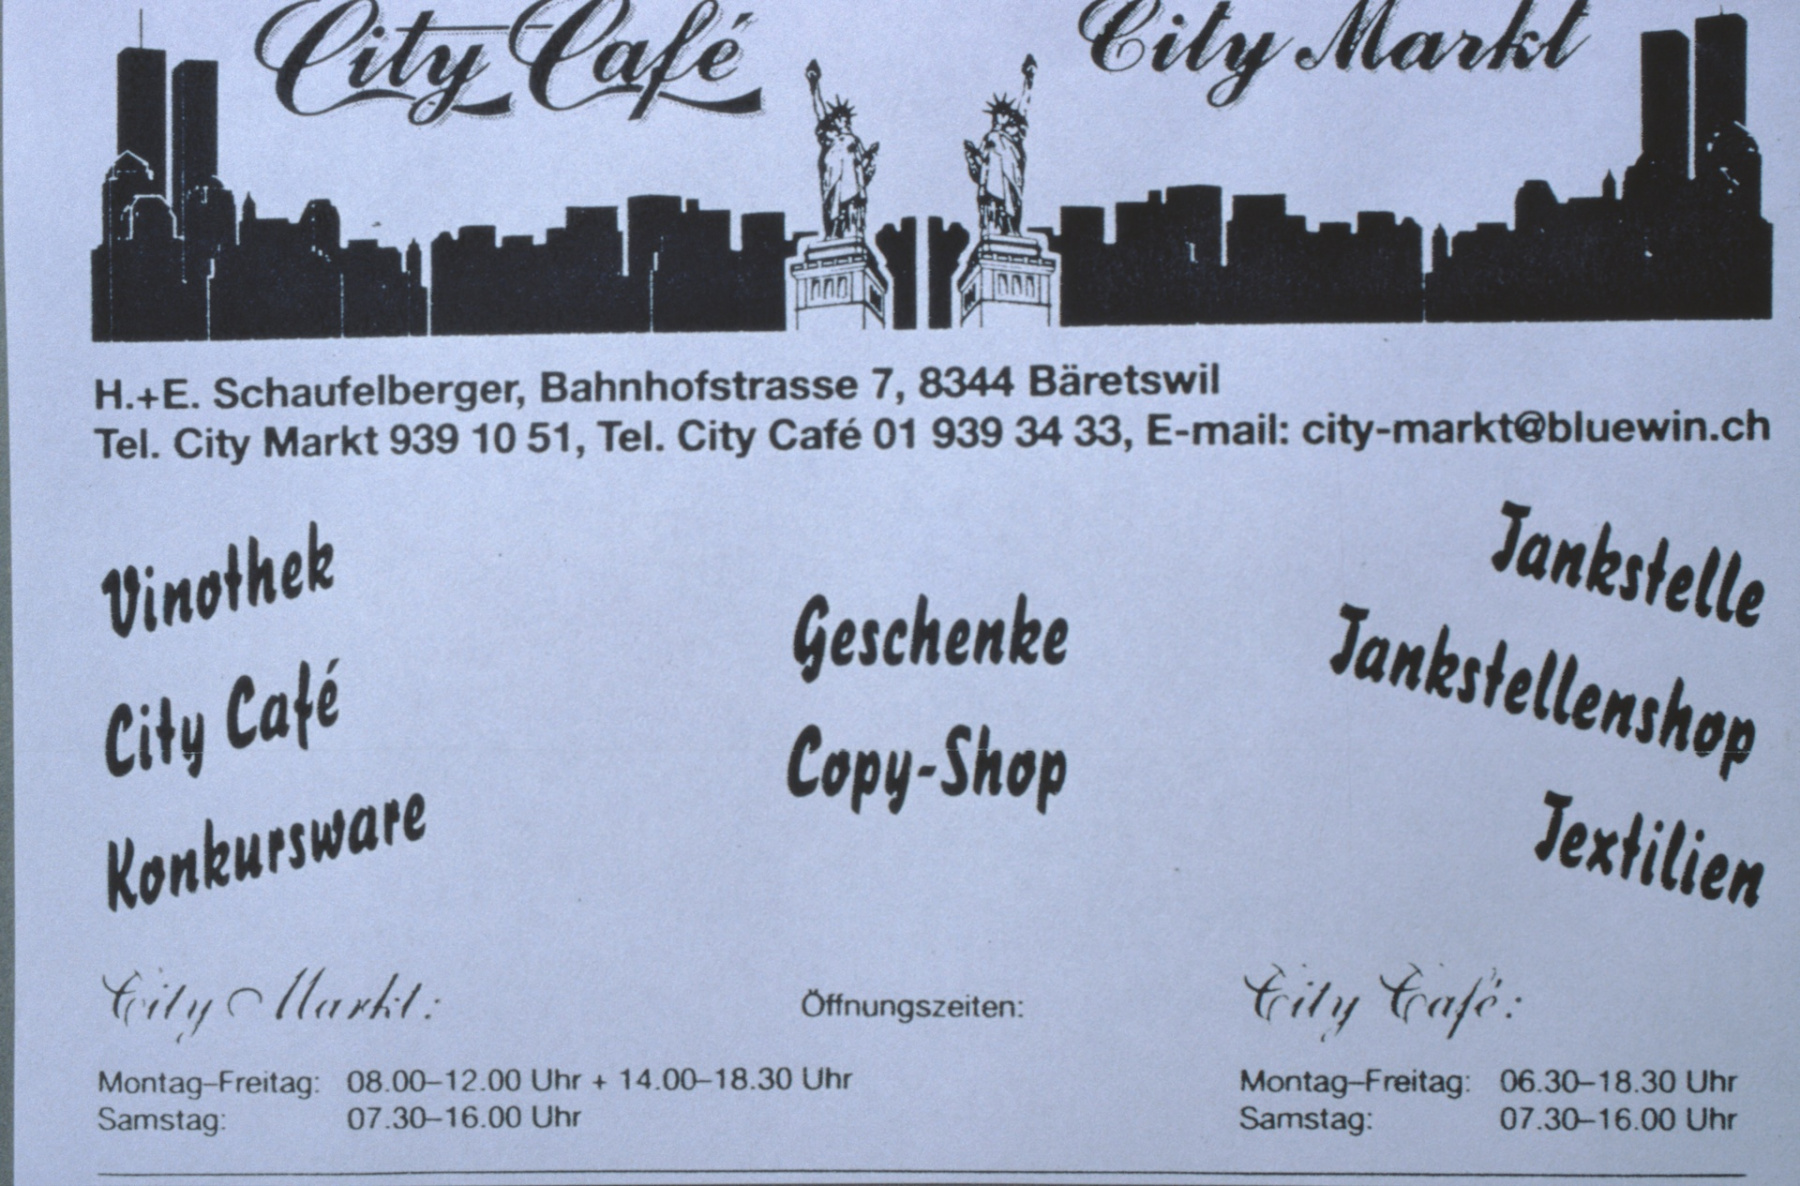 City Café, Inserat Männerturntag